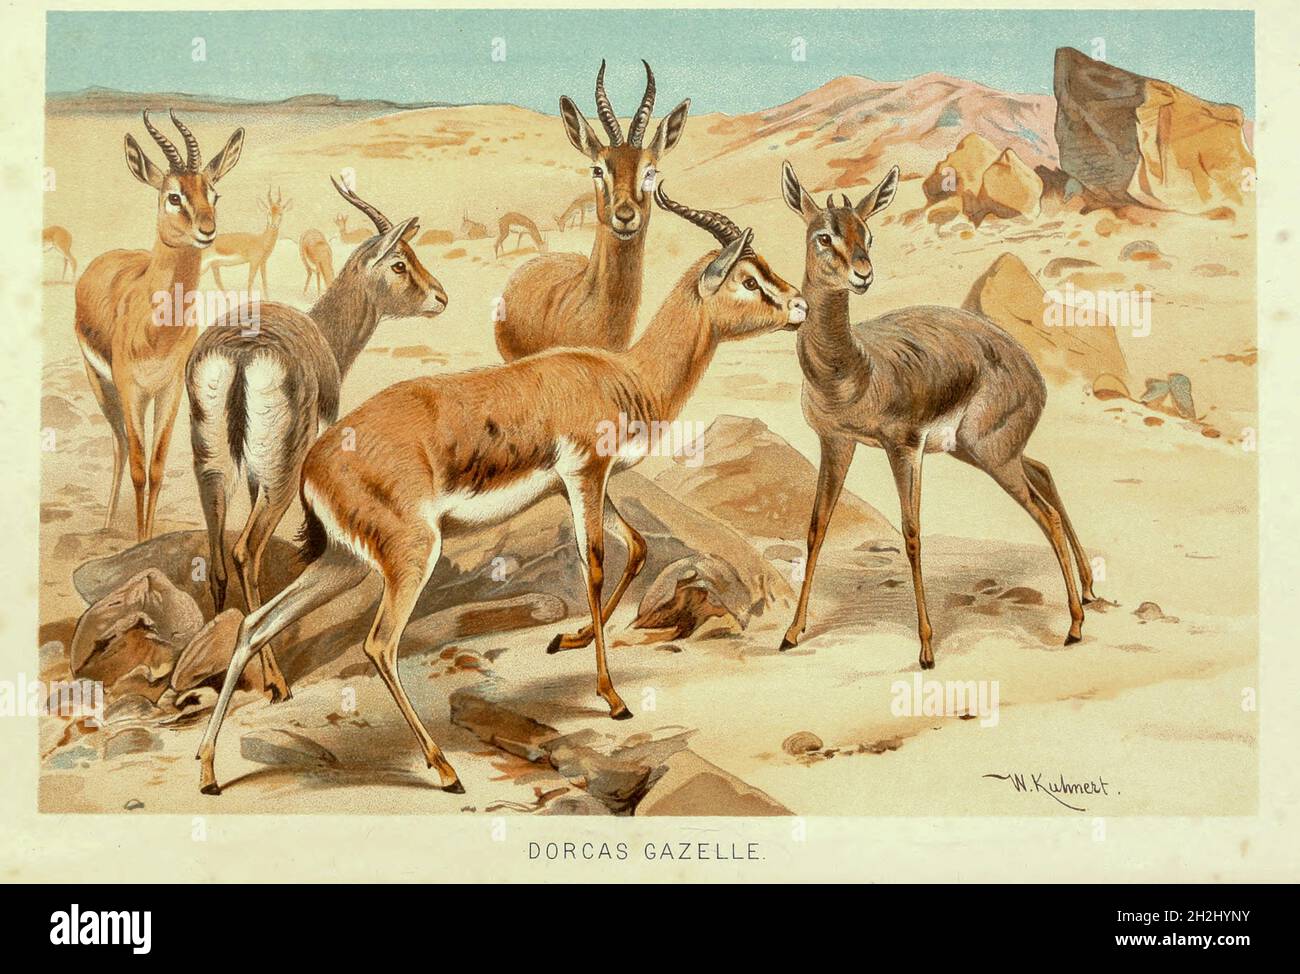 dorcas Gazelle (Gazella dorcas), auch bekannt als ariel Gazelle, ist eine kleine und gewöhnliche Gazelle. Die dorcas Gazelle steht etwa 55–65 cm (1.8–2.1 Fuß) an der Schulter, mit einer Kopf- und Körperlänge von 90–110 cm (3–3.5 Fuß) und einem Gewicht von 15–20 kg (33–44 Pfund). Die zahlreichen Unterarten überleben auf der Vegetation in Grasland, Steppe, Wadis, Bergwüste und in semidesertem Klima Afrikas und Arabiens. Aus dem Buch ' Royal Natural History ' Band 2 herausgegeben von Richard Lydekker, veröffentlicht in London von Frederick Warne & Co im Jahr 1893-1894 Stockfoto